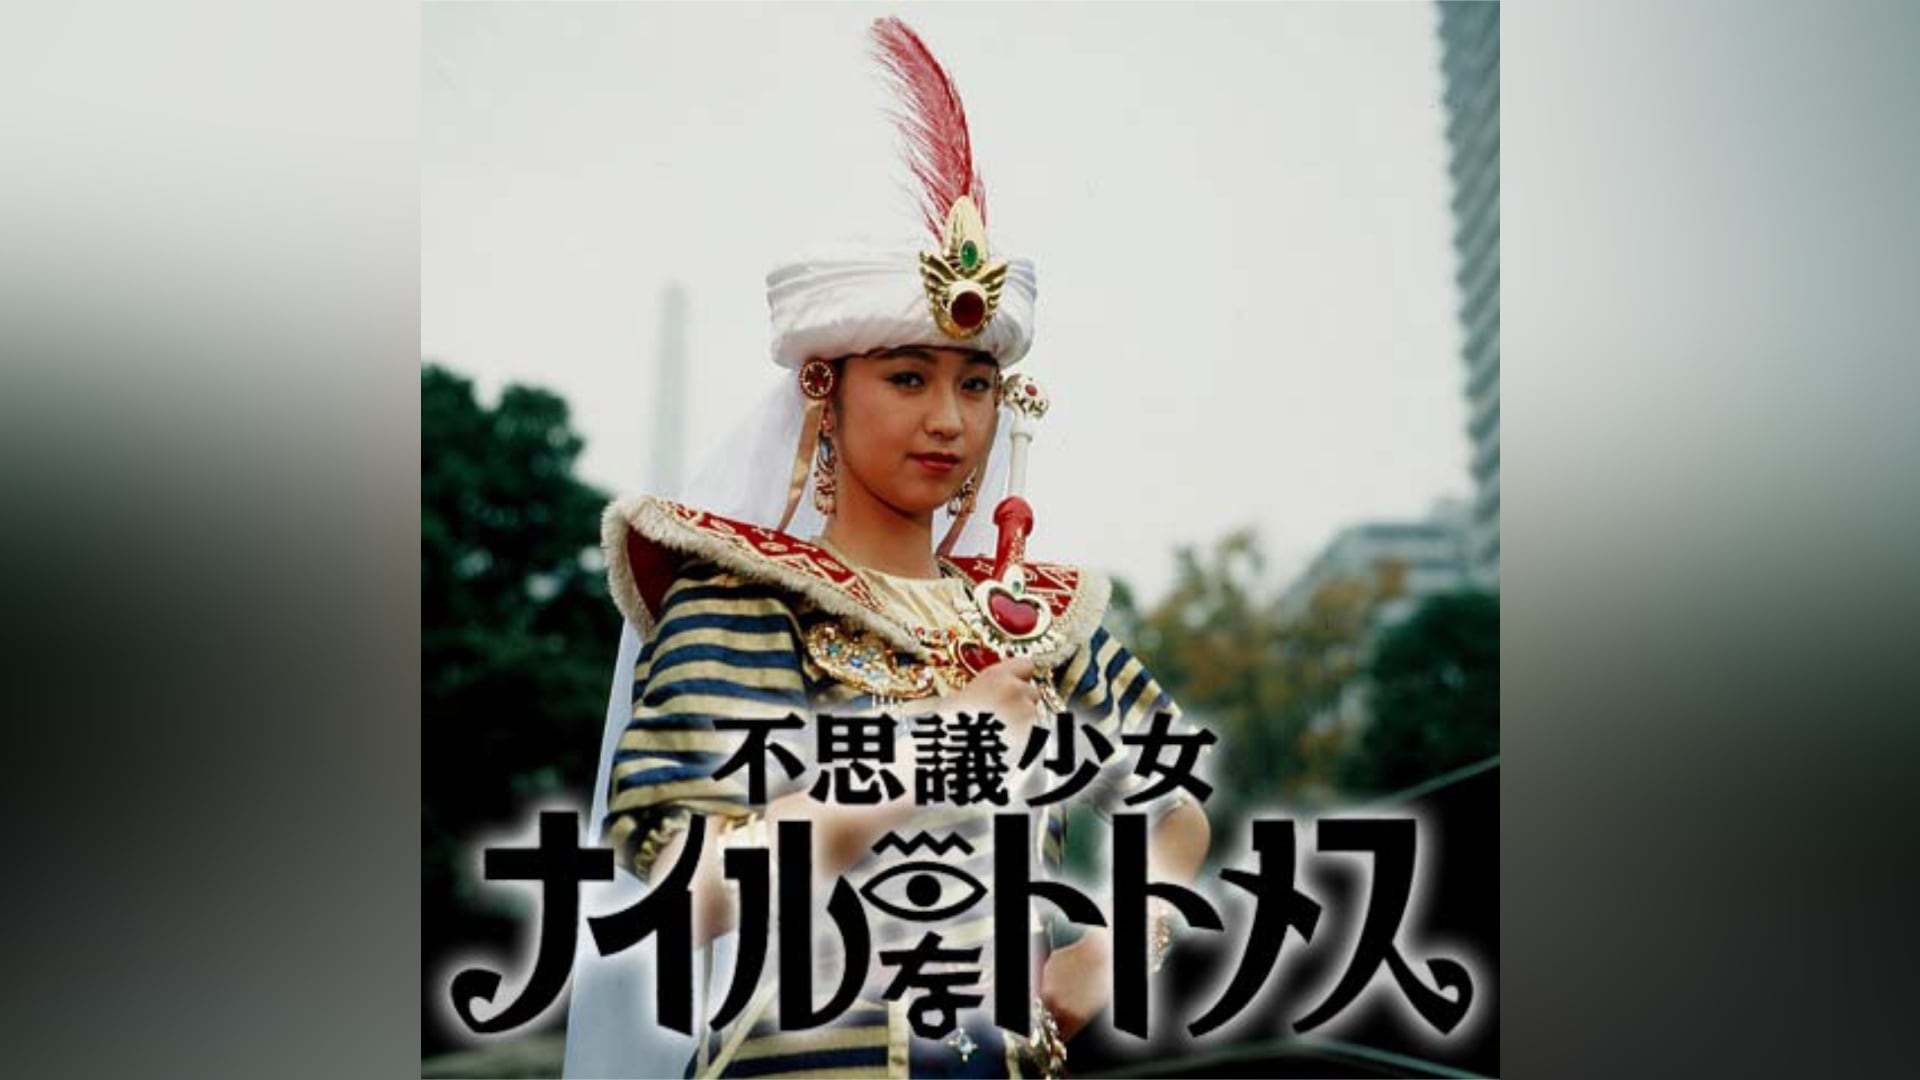 不思議少女ナイルなトトメス VOL.4 堀川早苗 - DVD